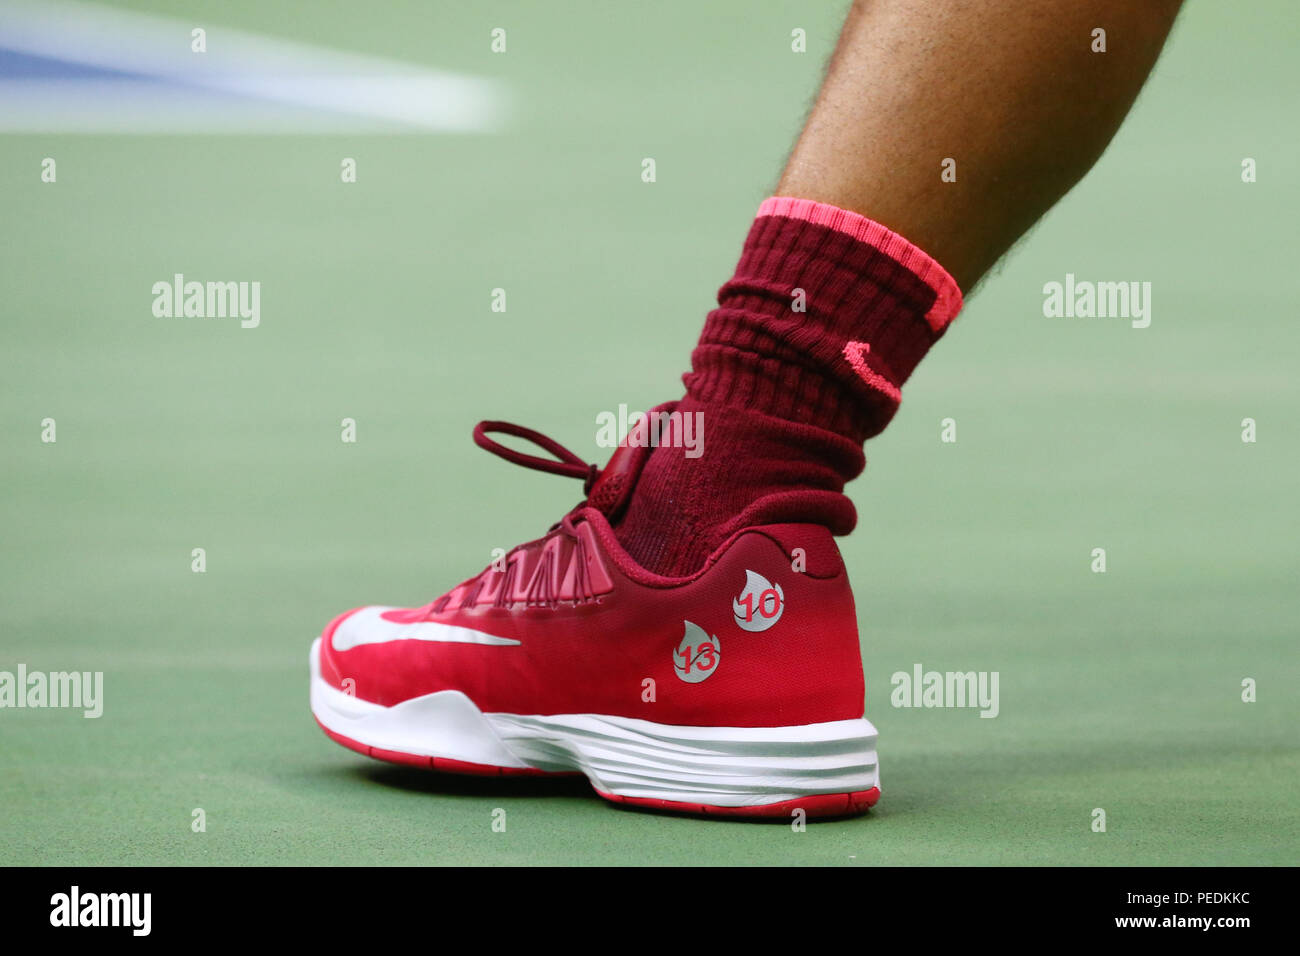 Grand Slam Rafael Nadal campeón de España lleva zapatillas tenis Nike personalizadas durante el US Open 2017 partido final de stock - Alamy